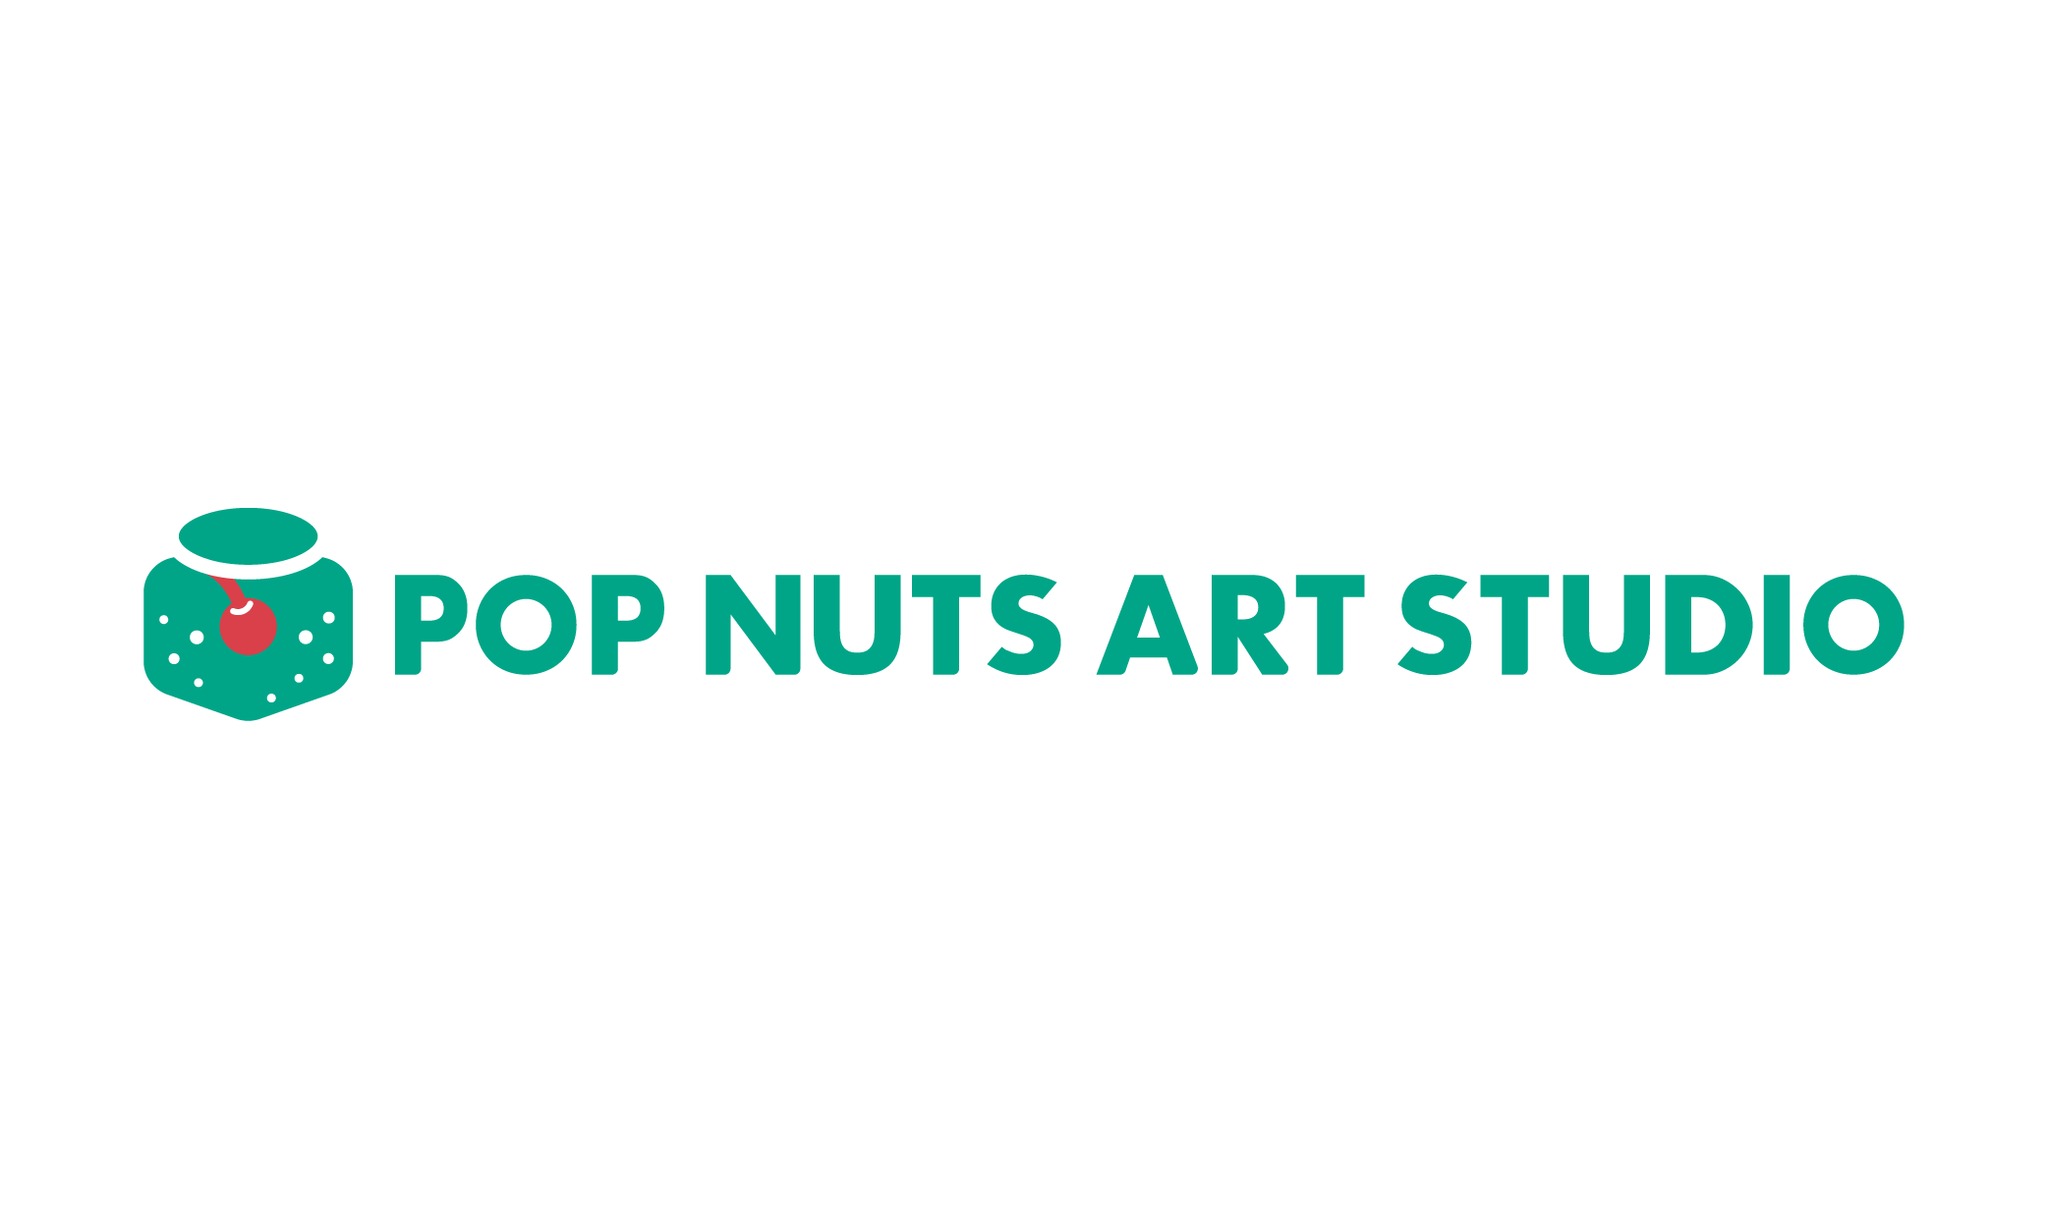 POP NUTS ART STUDIO